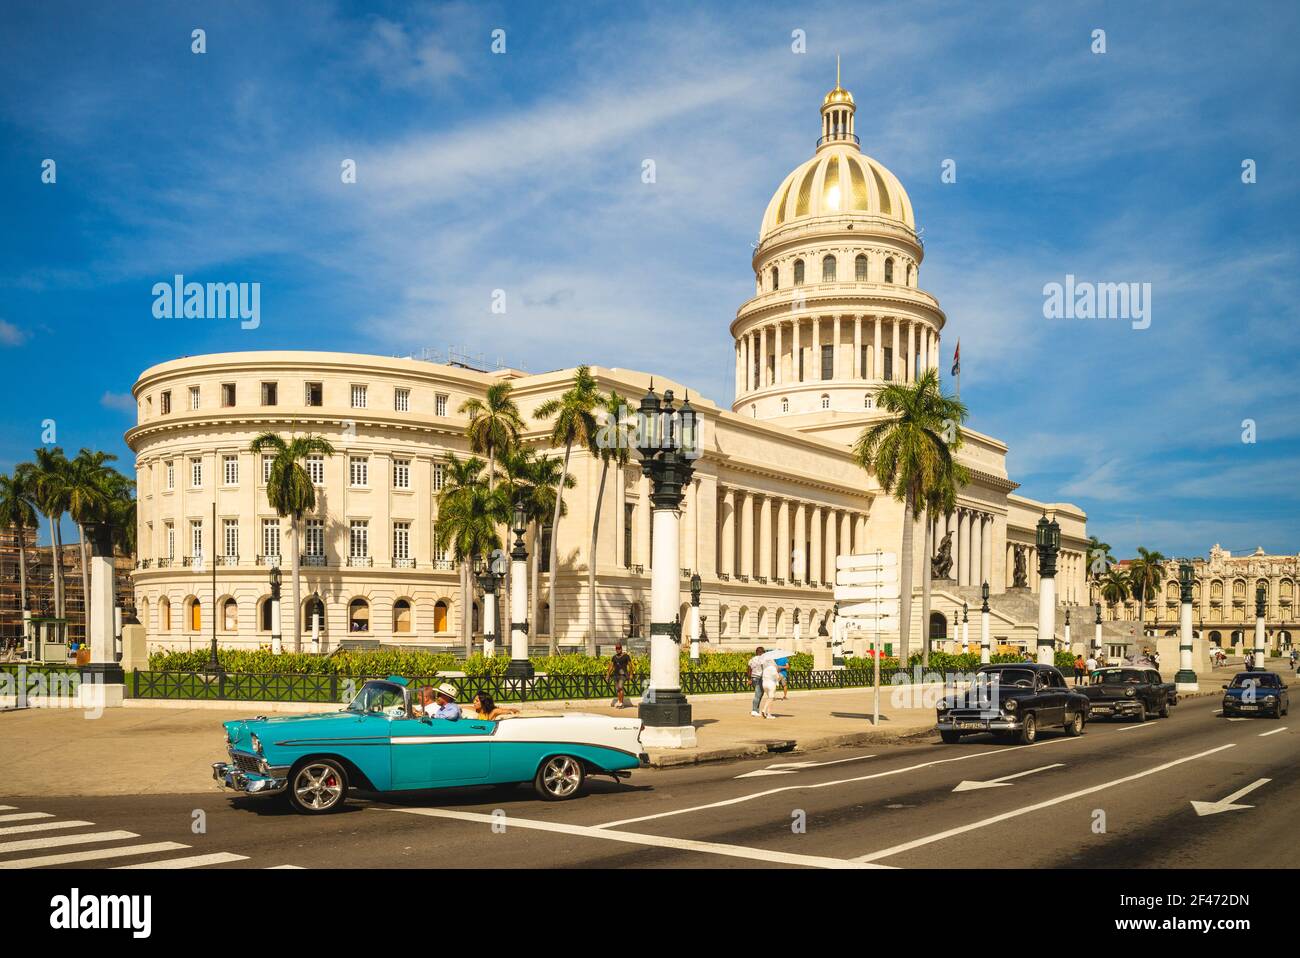 28. Oktober 2019: Oldtimer und Kapitolgebäude, ein öffentliches Gebäude und einer der meistbesuchten Orte in havanna, kuba. Es wurde von 19 gebaut Stockfoto